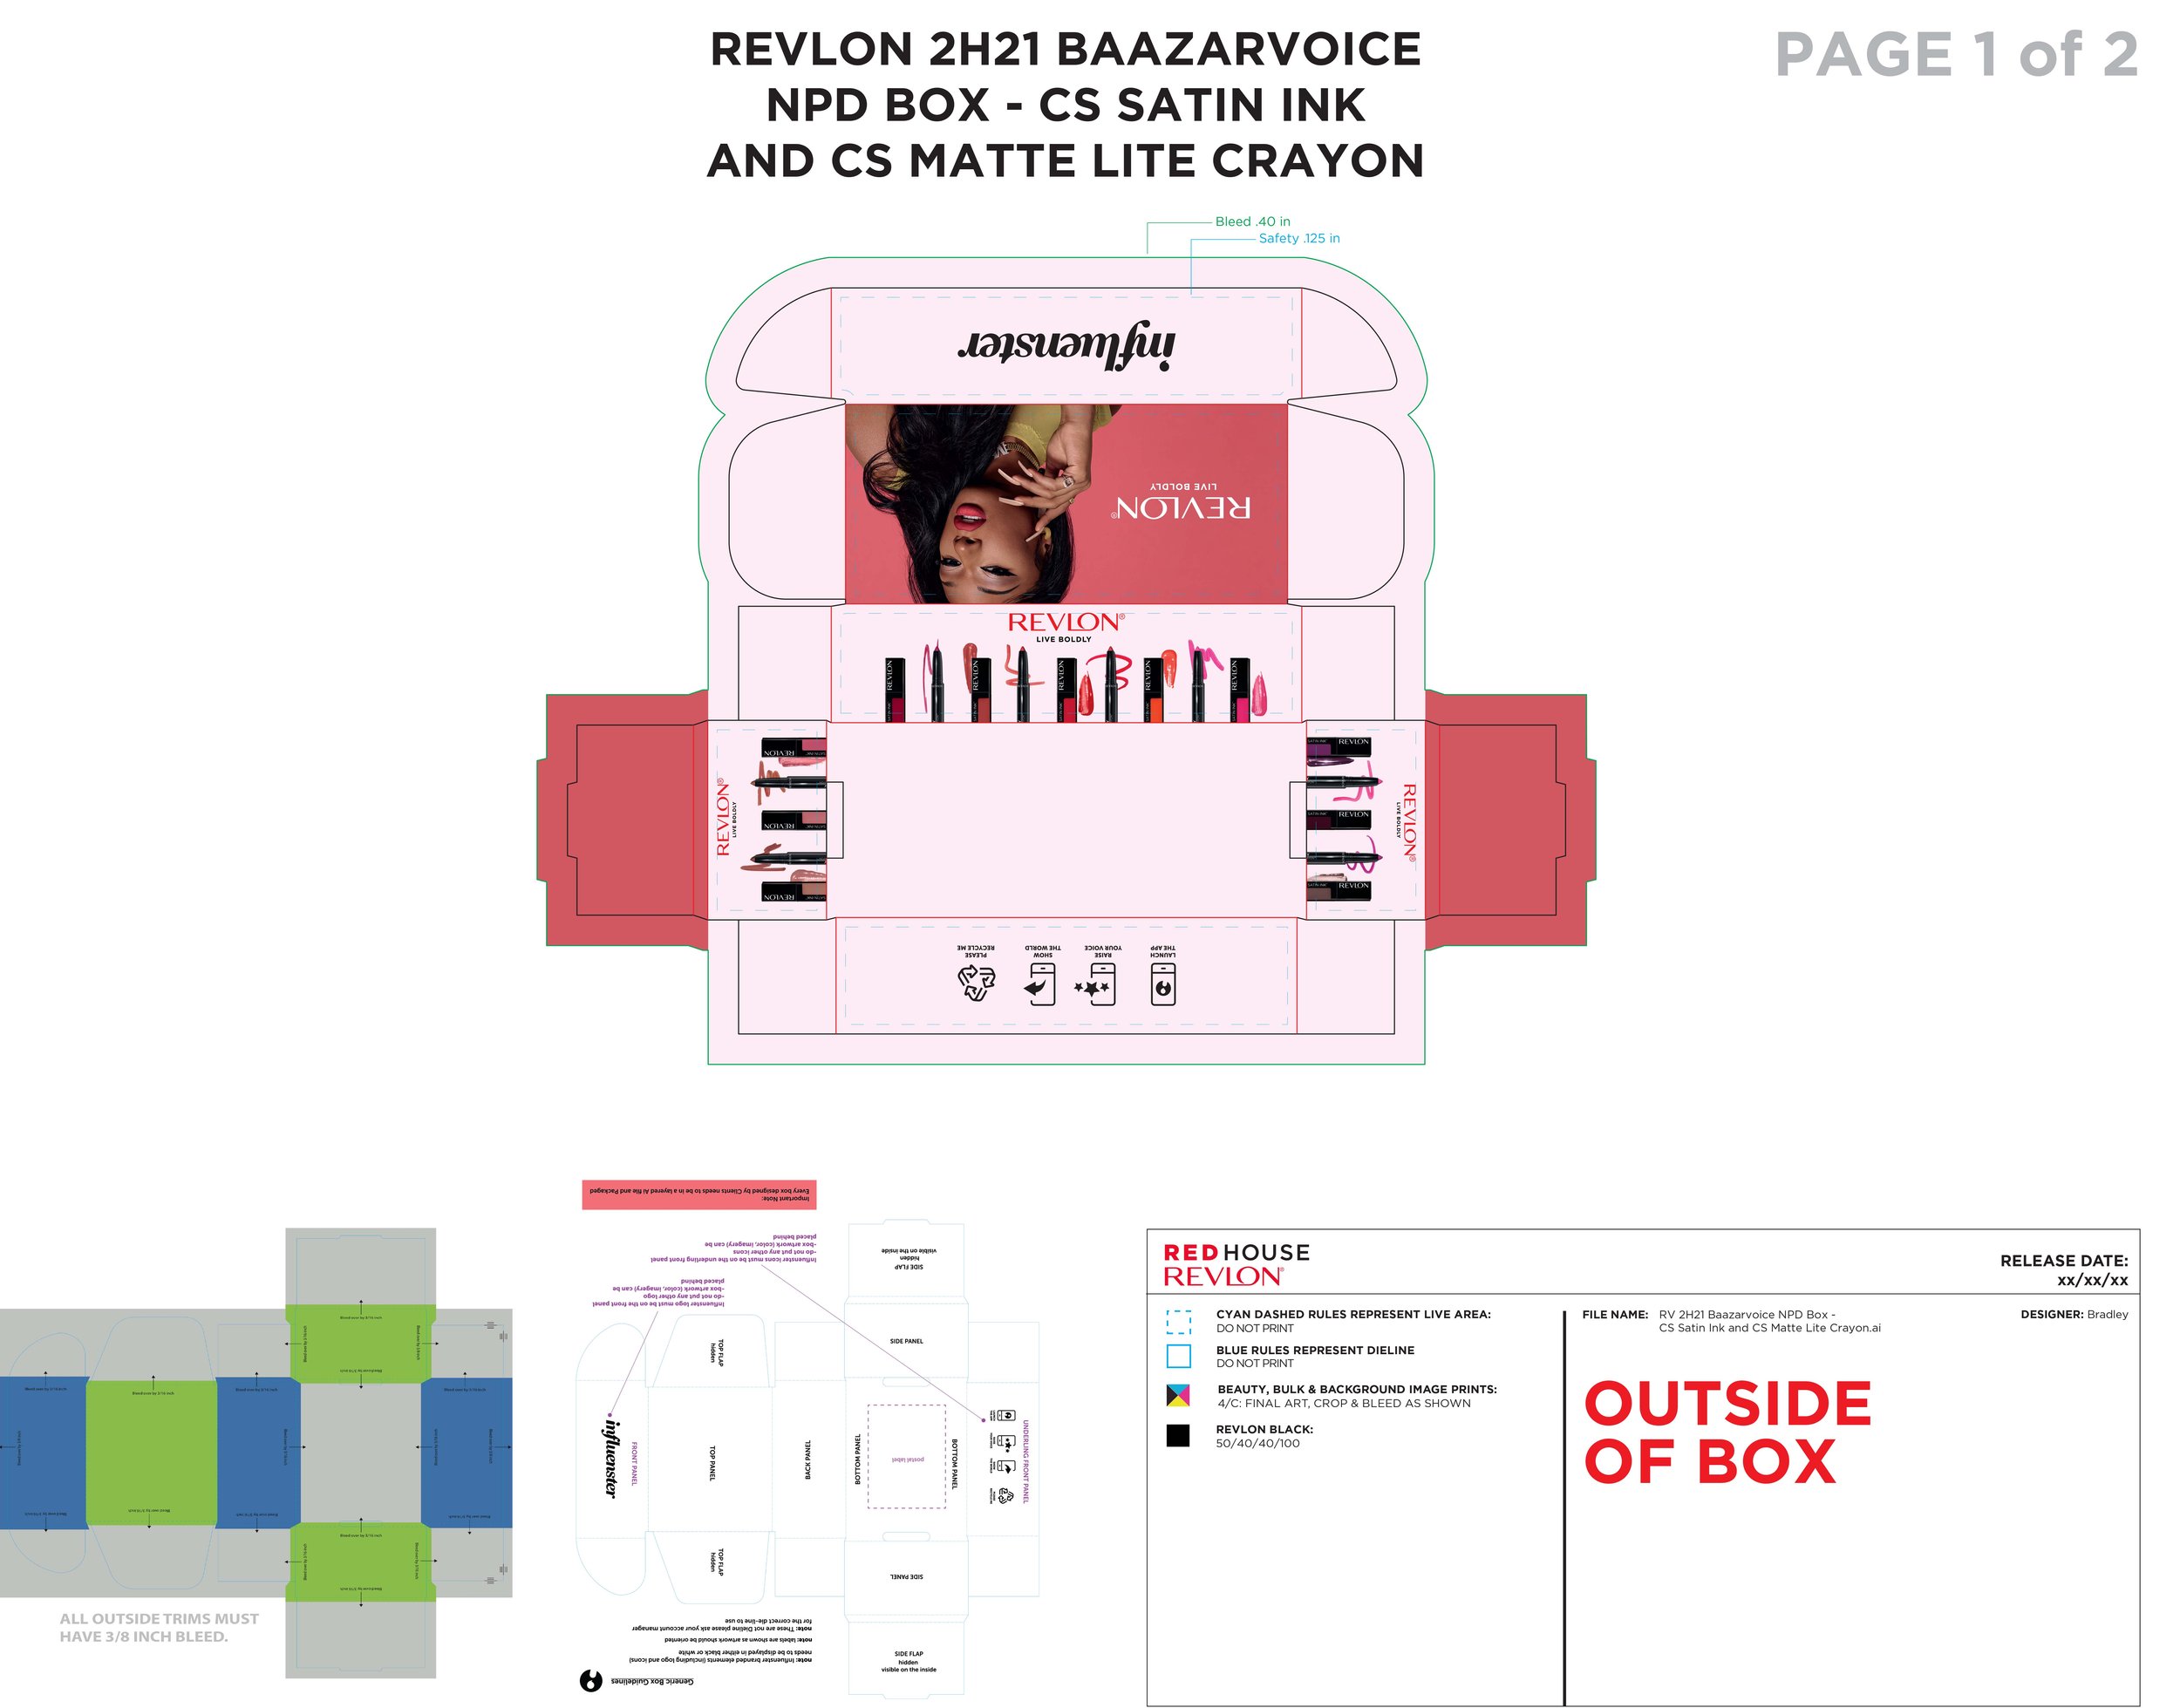 RV 2H21 Baazarvoice NPD Box - CS Satin Ink and CS Matte Lite Crayon_HR-1.jpg